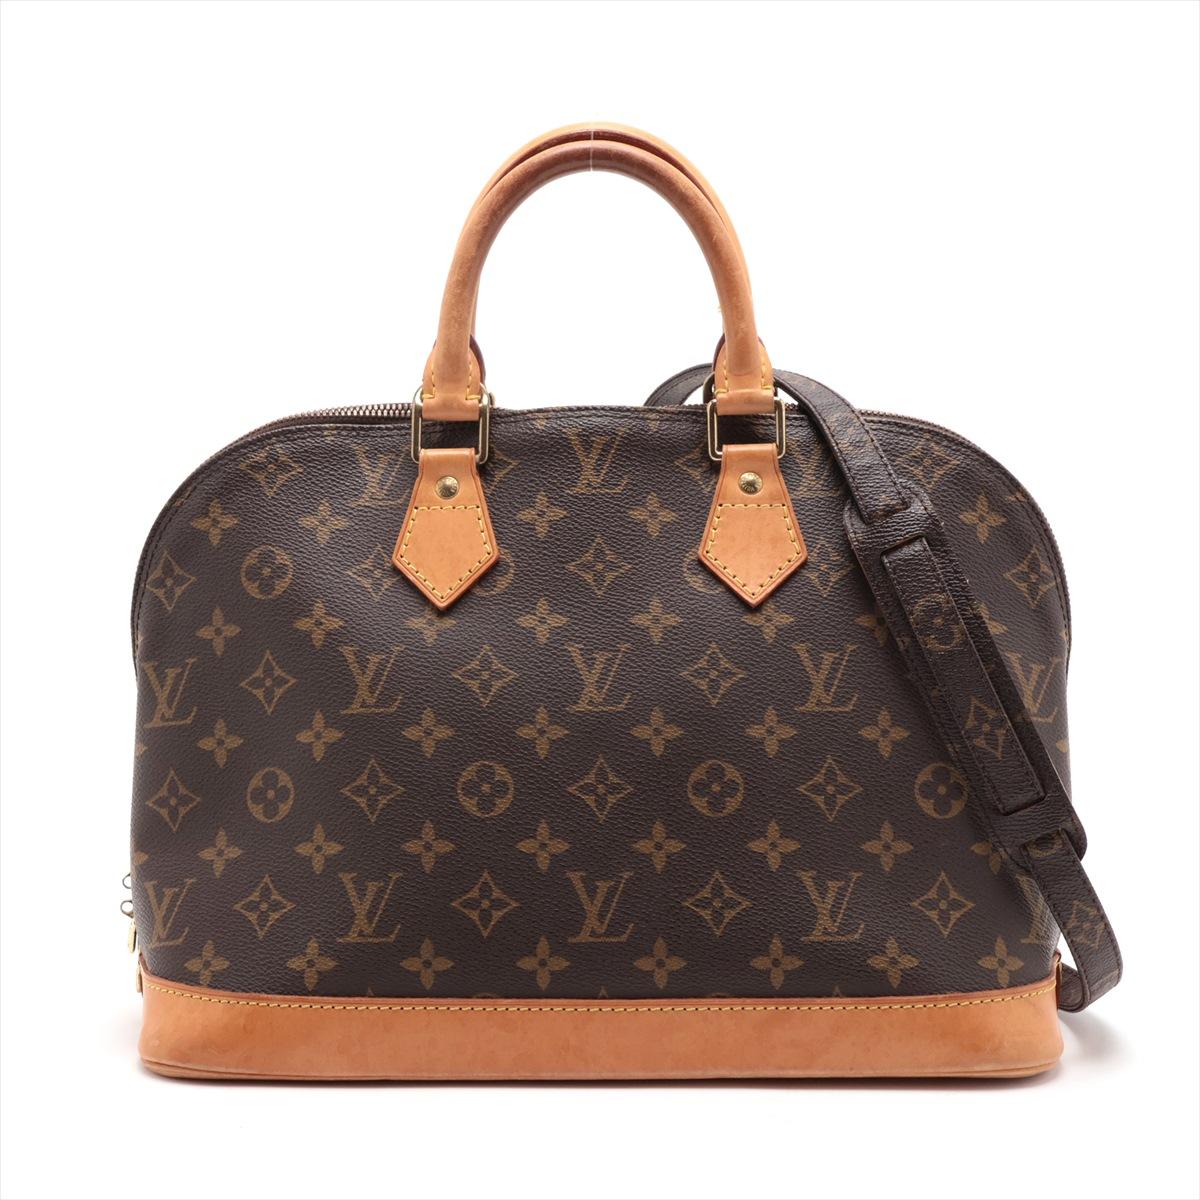 Die Louis Vuitton Monogram Alma mit Riemen ist eine kultige und raffinierte Handtasche, die nahtlos zeitloses Design mit moderner Funktionalität verbindet. Die strukturierte Silhouette der Alma ist aus dem klassischen Monogram Canvas gefertigt und